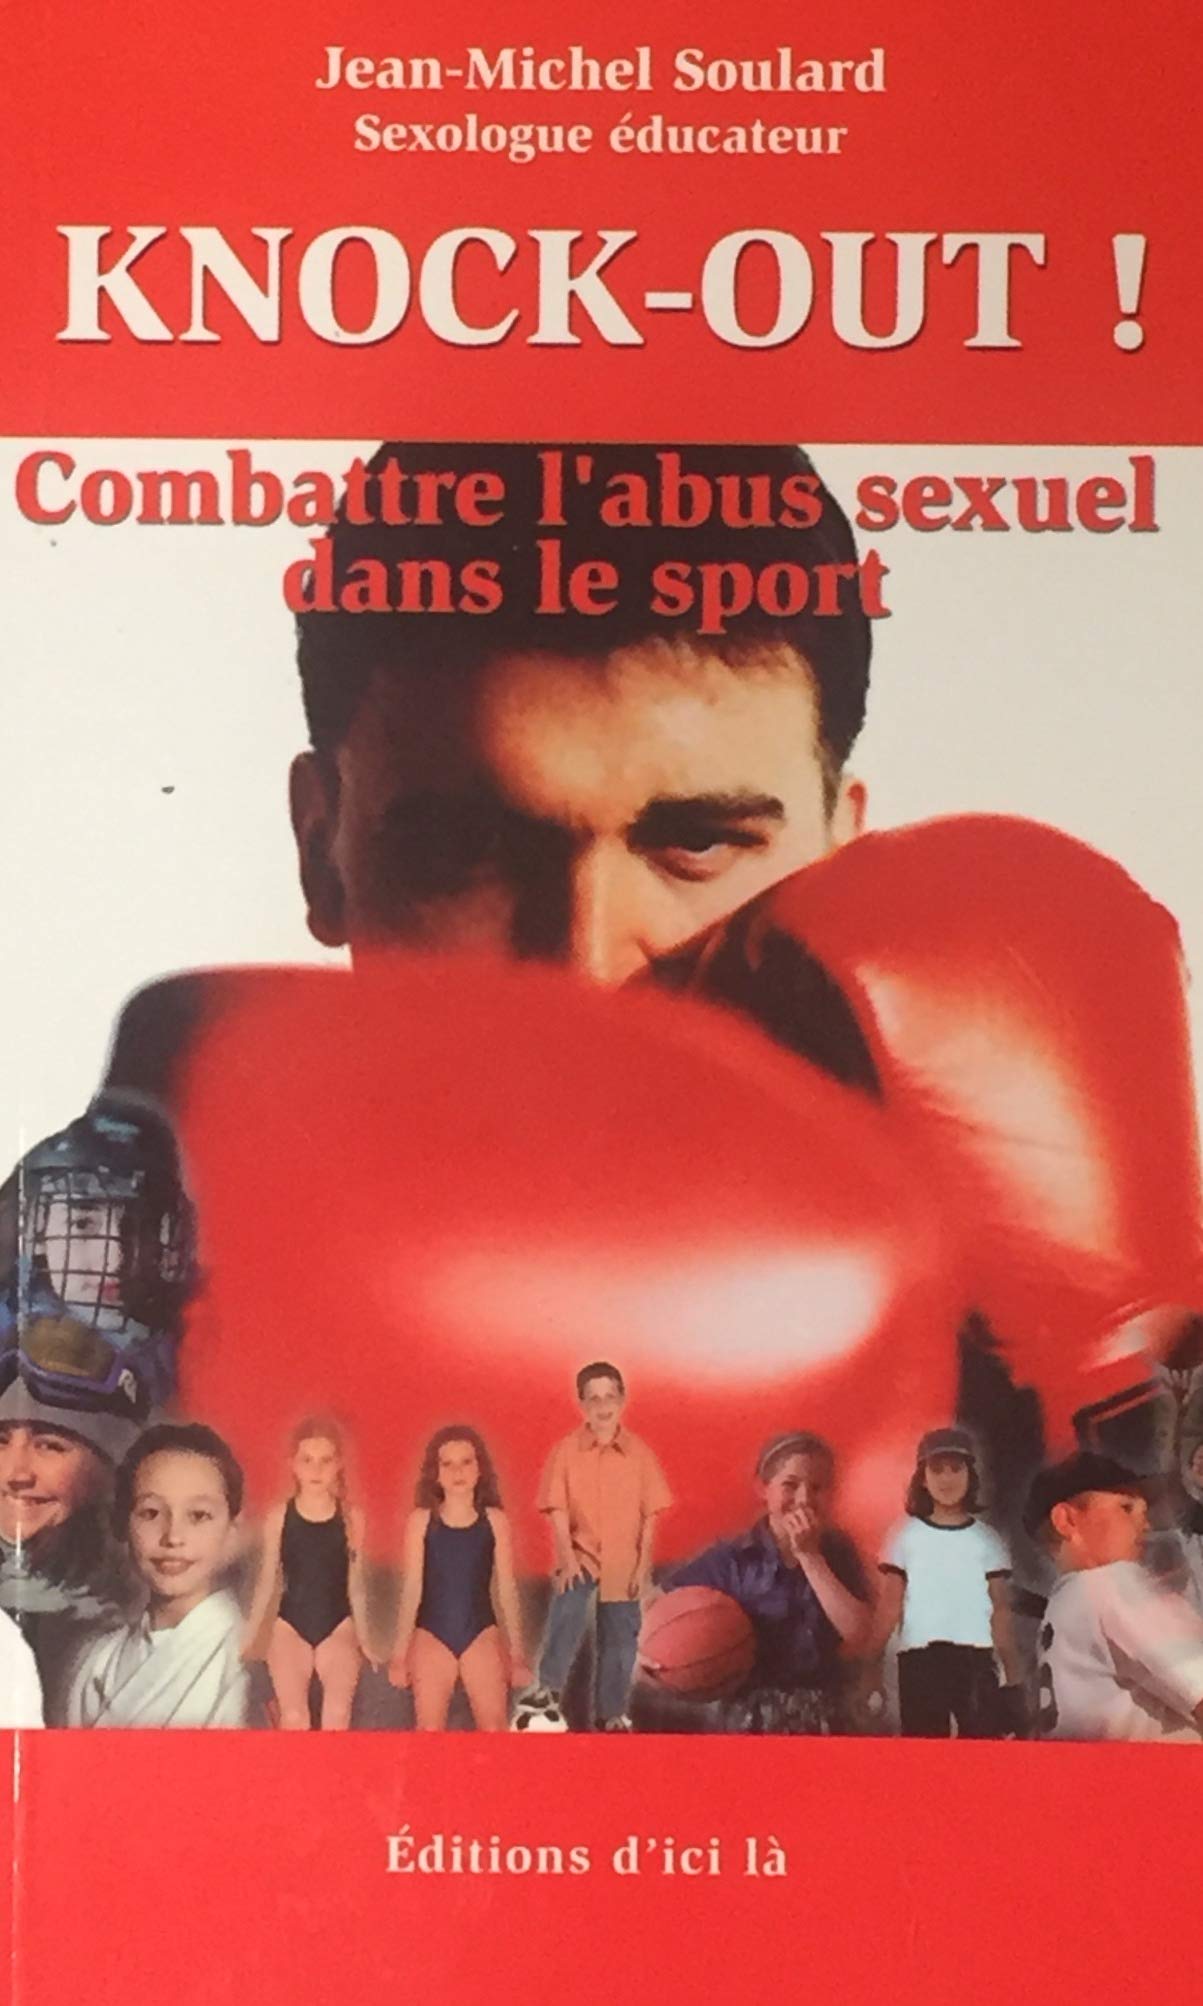 Livre ISBN 2923032047 Knock-out! combattre l'abus sexuel dans le sport (Jean-Michel Soulard)